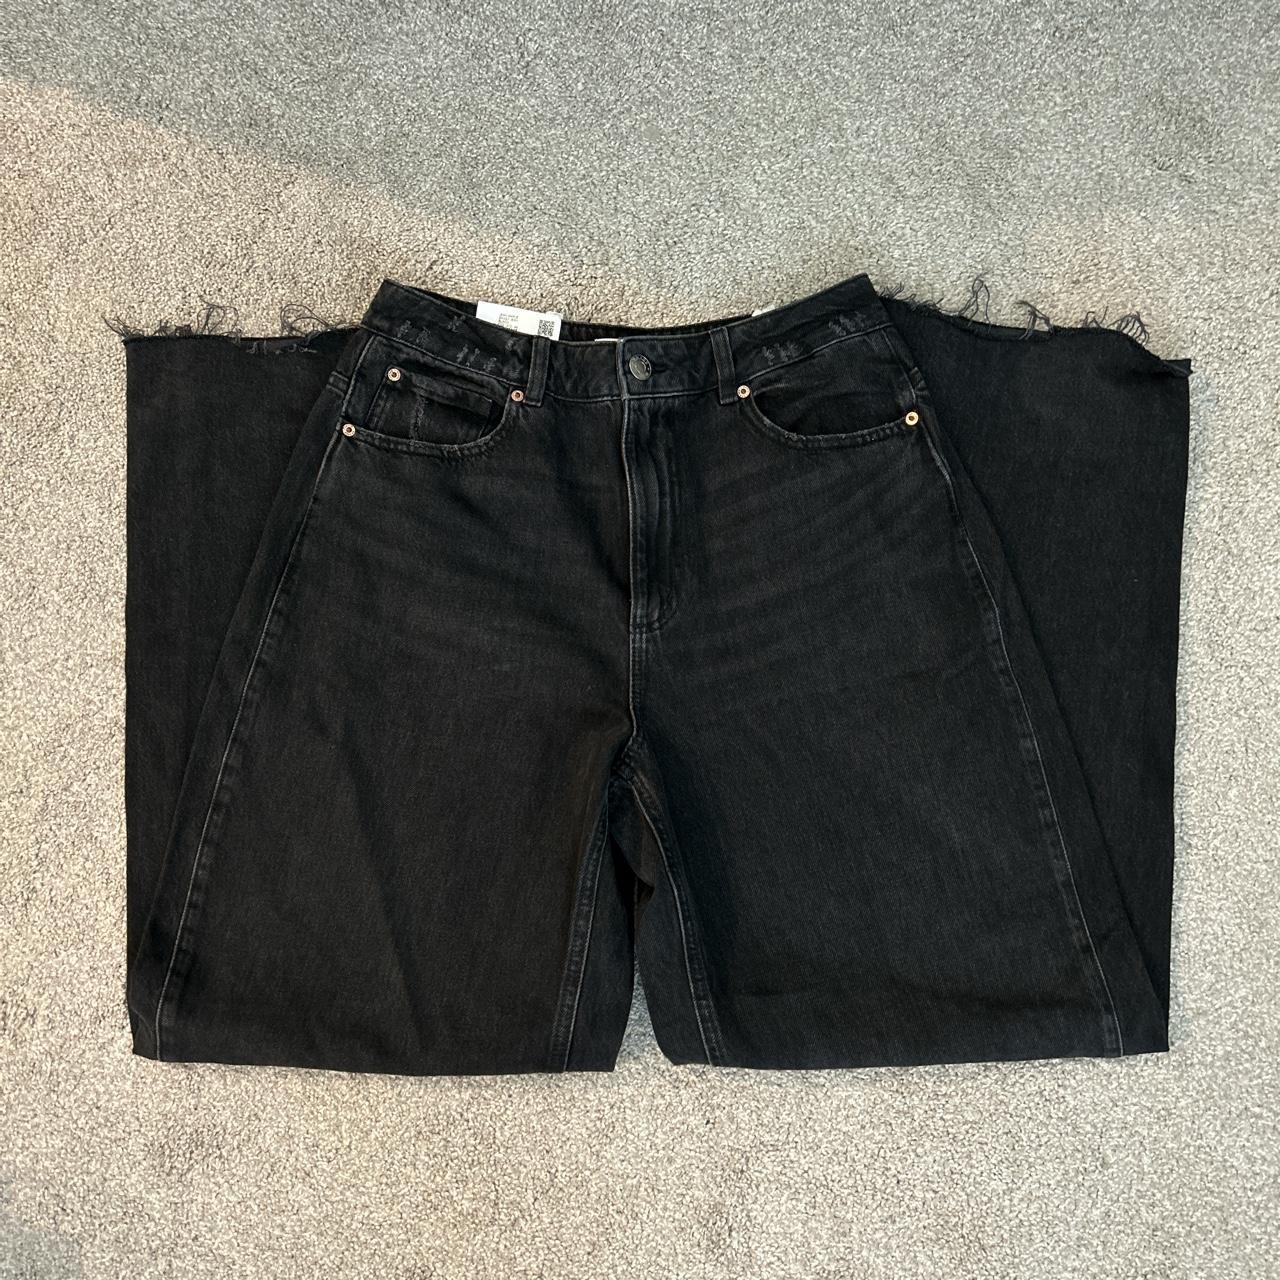 Garage high-rise baggy black jeans Size 9... - Depop